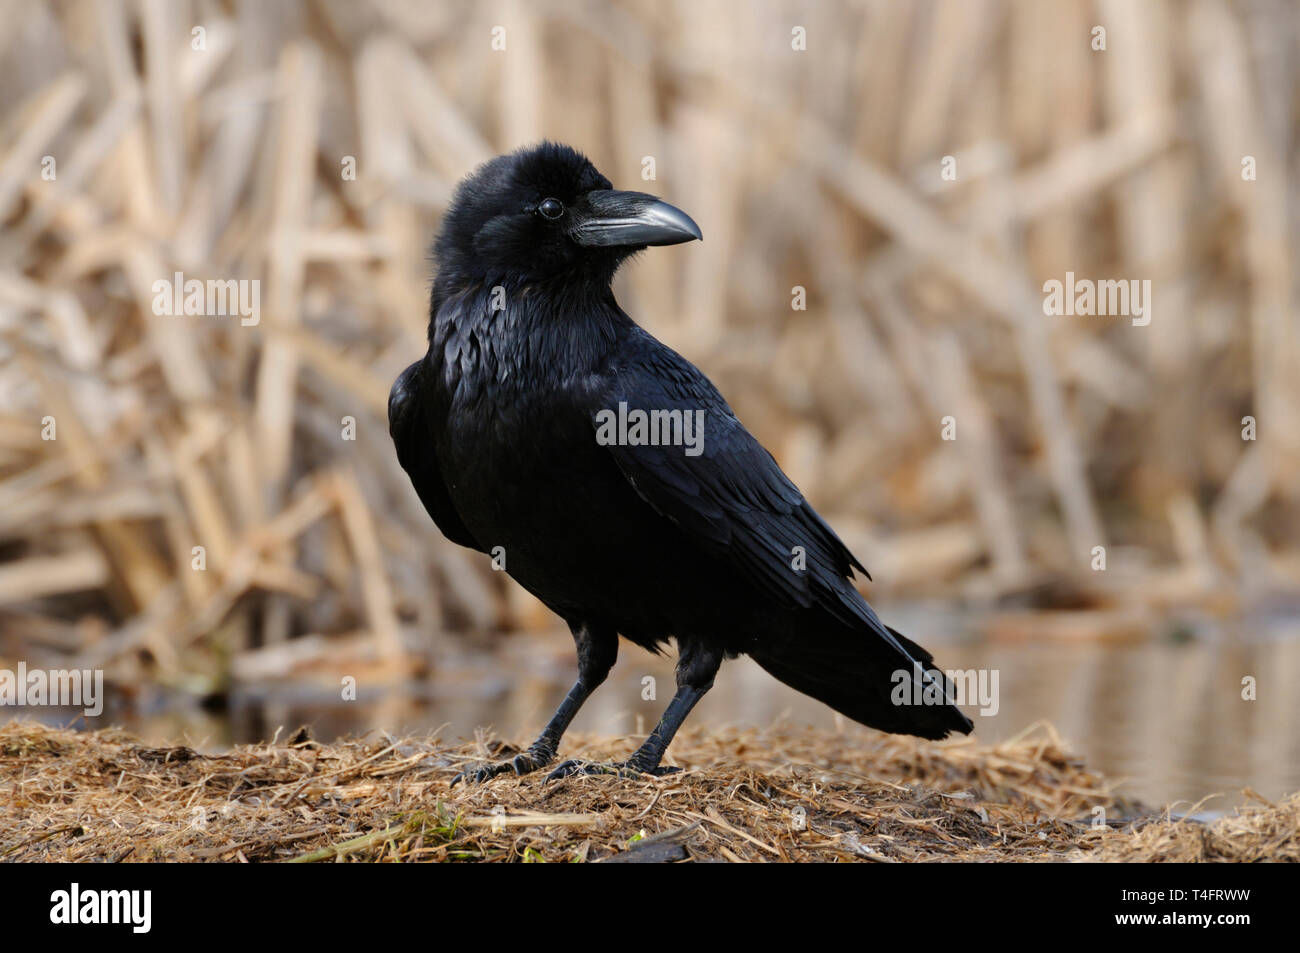 Comuni / Raven Kolkrabe ( Corvus corax ) arroccato sul terreno, scrupoloso close-up, nero lucente piumaggio, guardando attentamente, fauna selvatica, l'Europa. Foto Stock